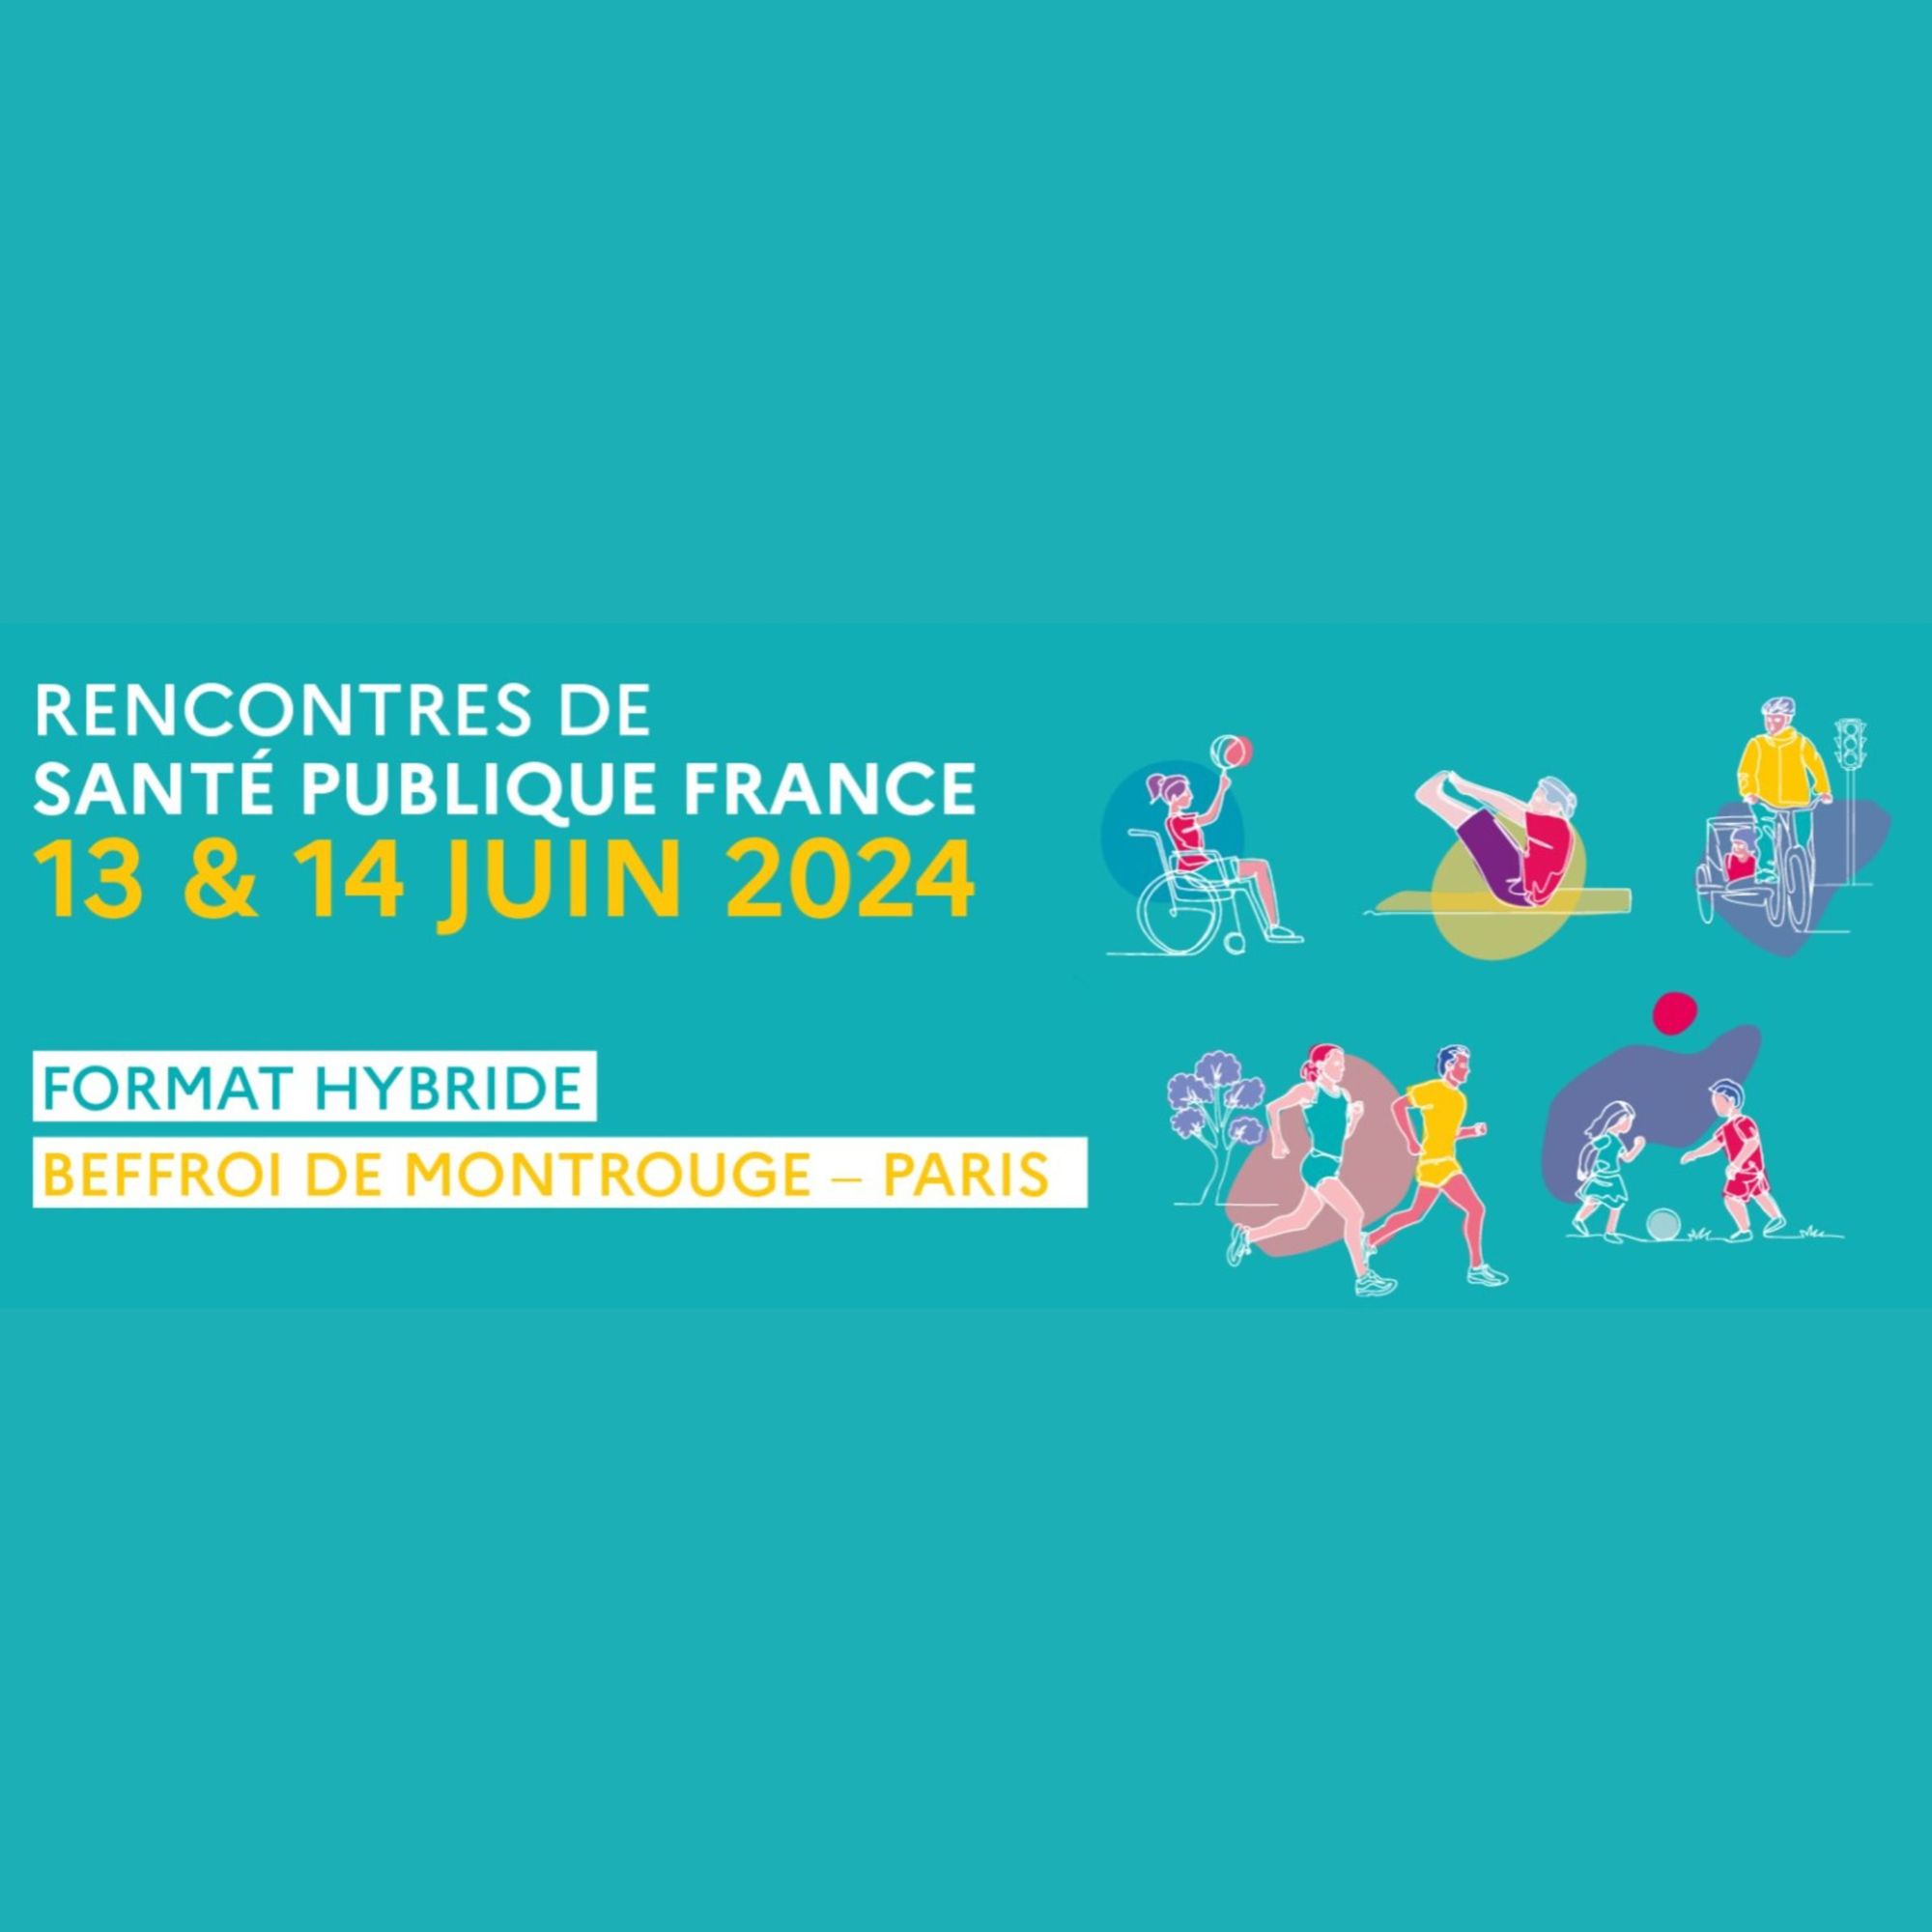  Rencontres de Santé publique France 2024